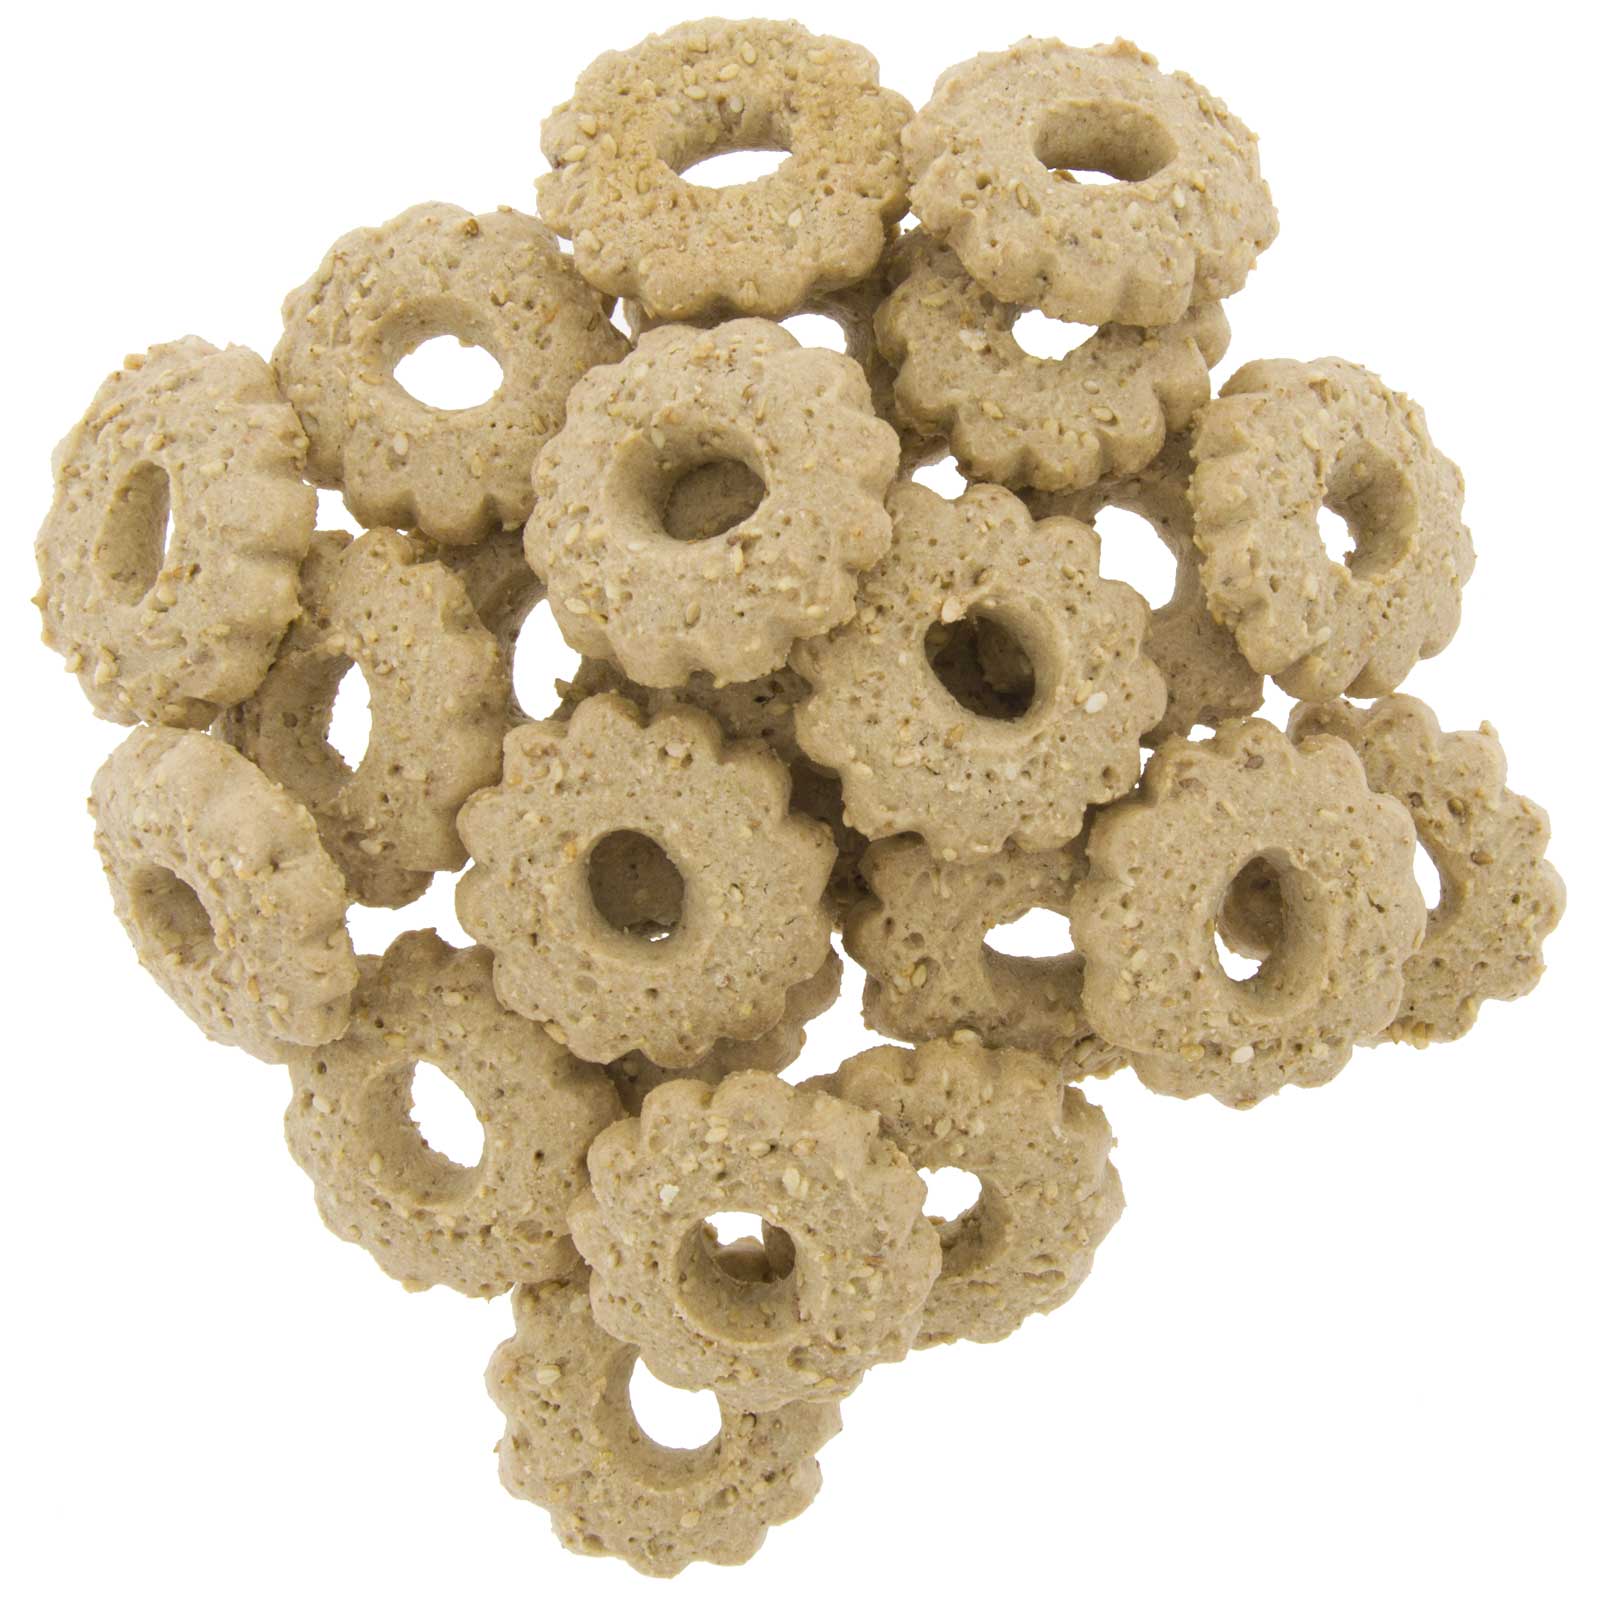 Saracene threads (buckwheat) 225G Ecological crackers of artisanal elaboration